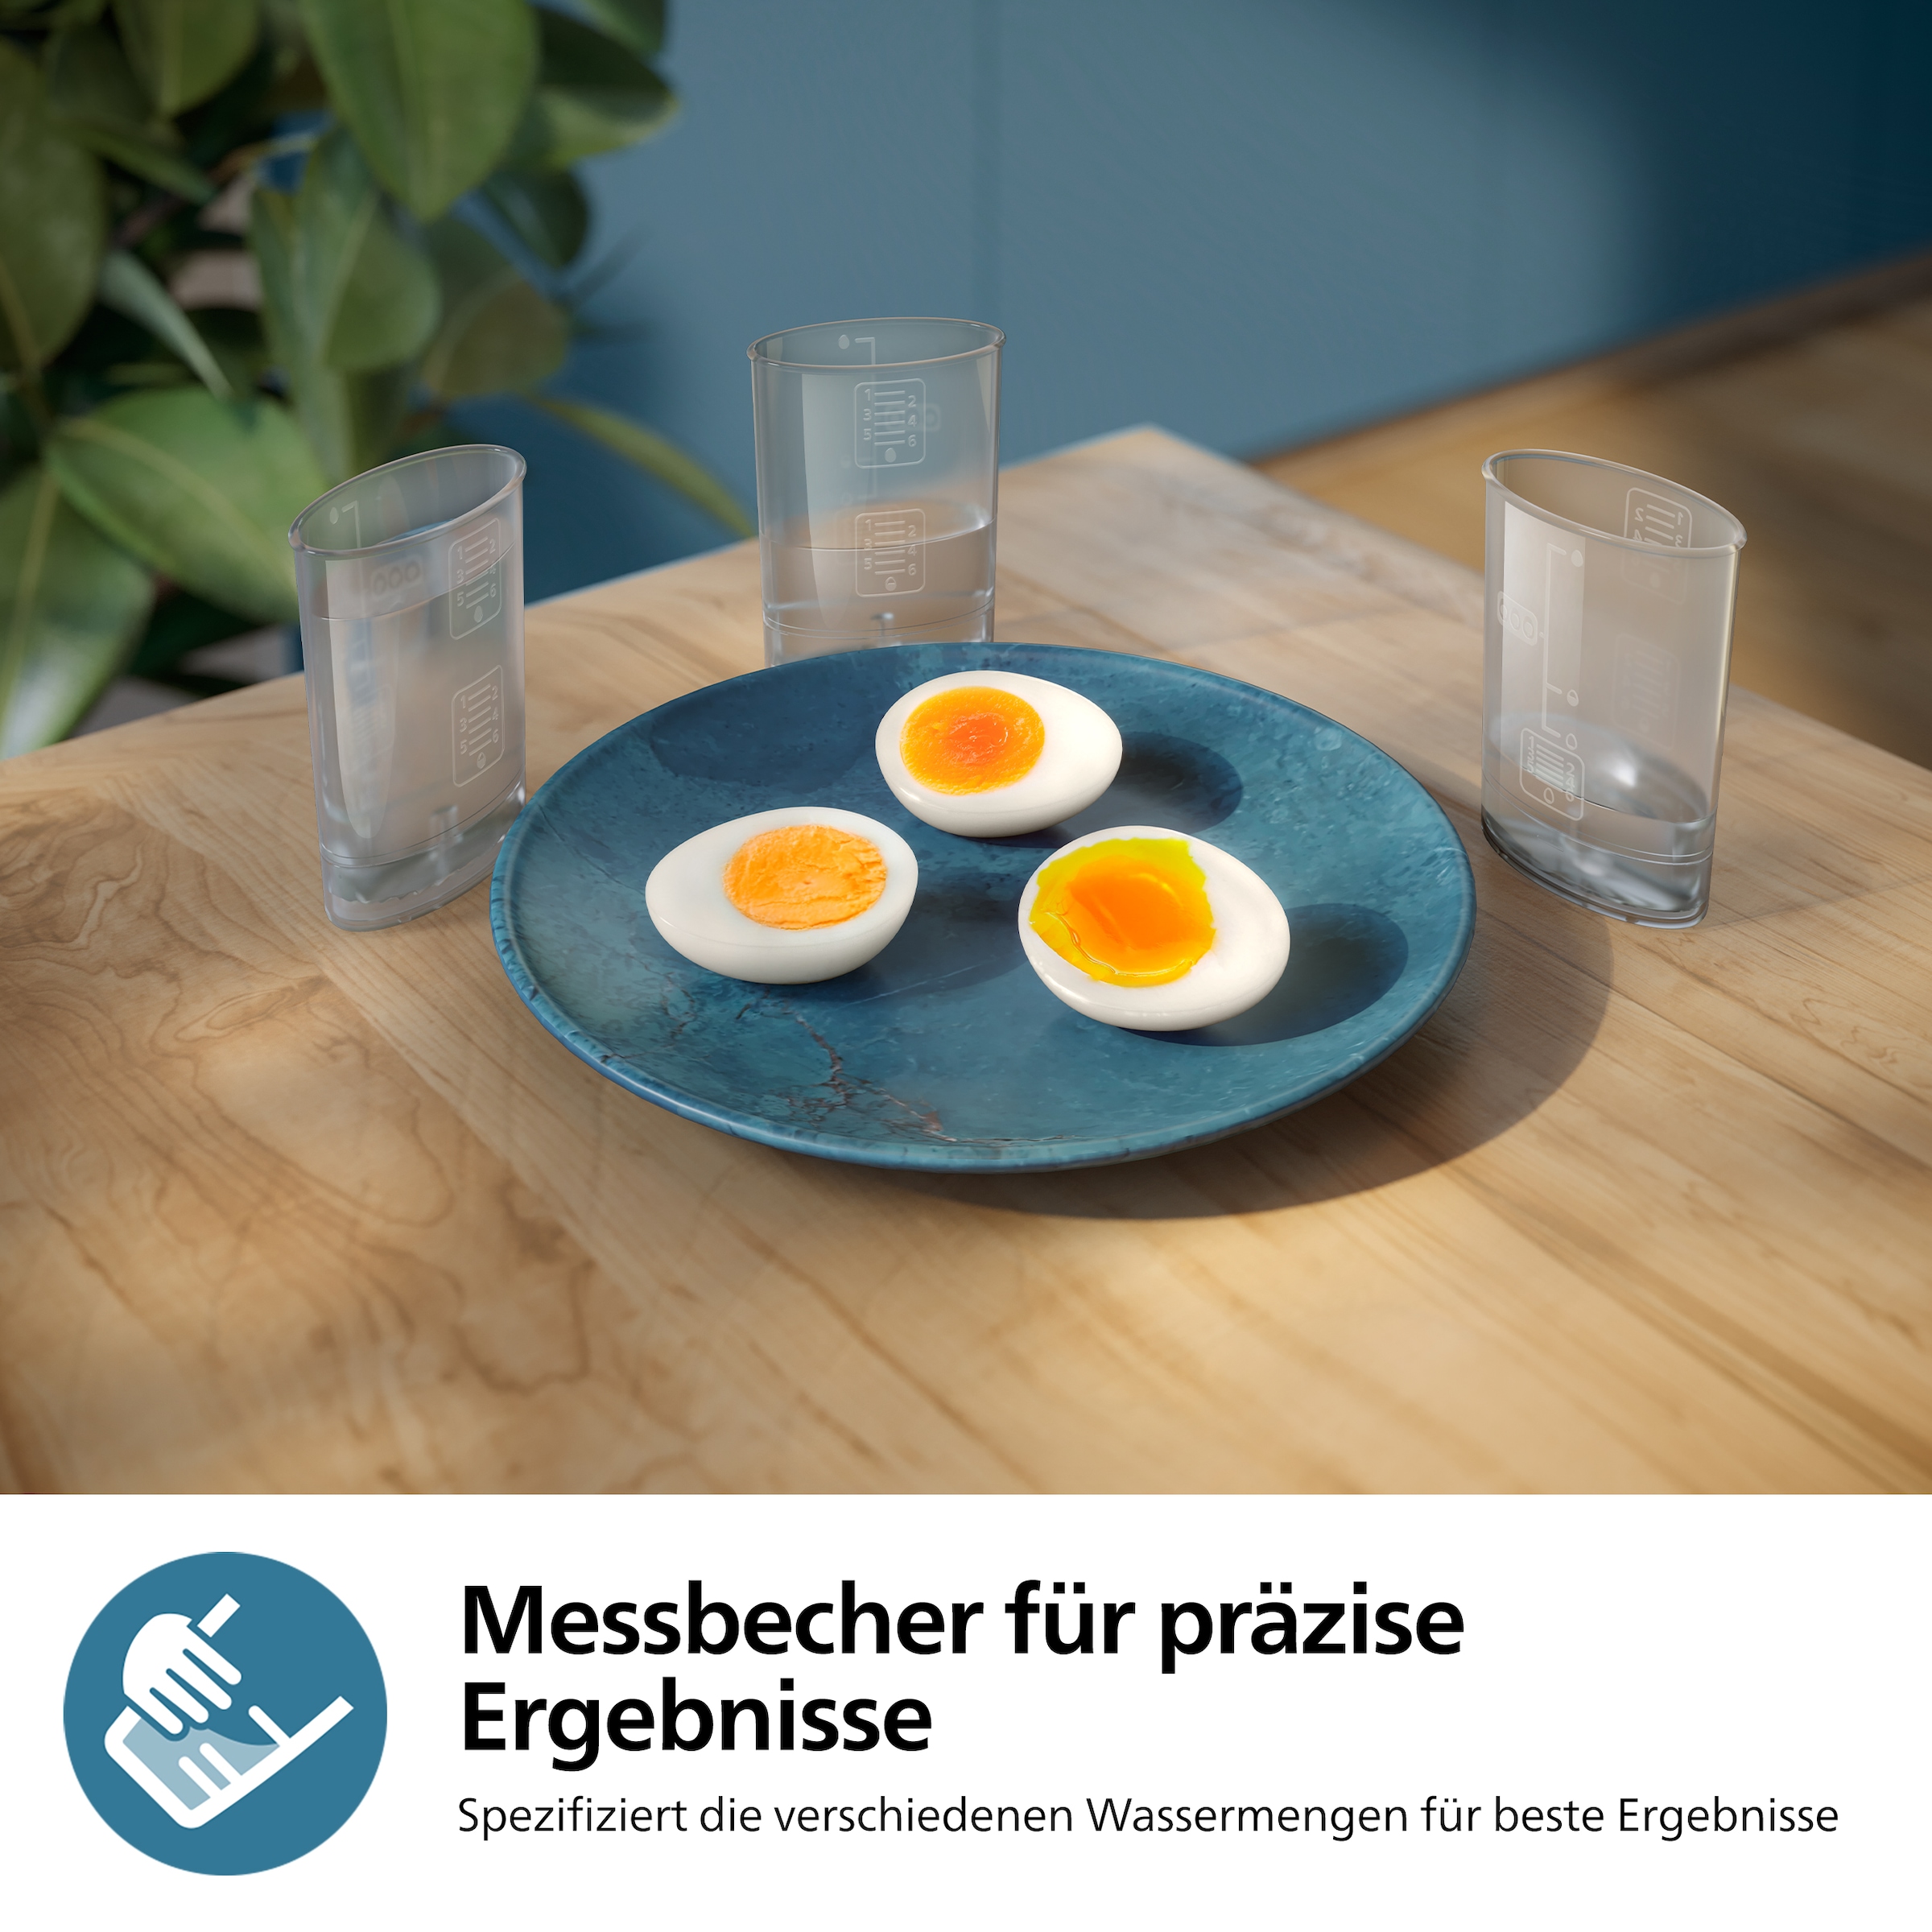 Philips Eierkocher »HD9137/90 3000 Series, Famieliengröße«, für 6 St. Eier, 400 W, mit dem Zubehör für pochierte Eier; verschiedene Kochstufen möglich